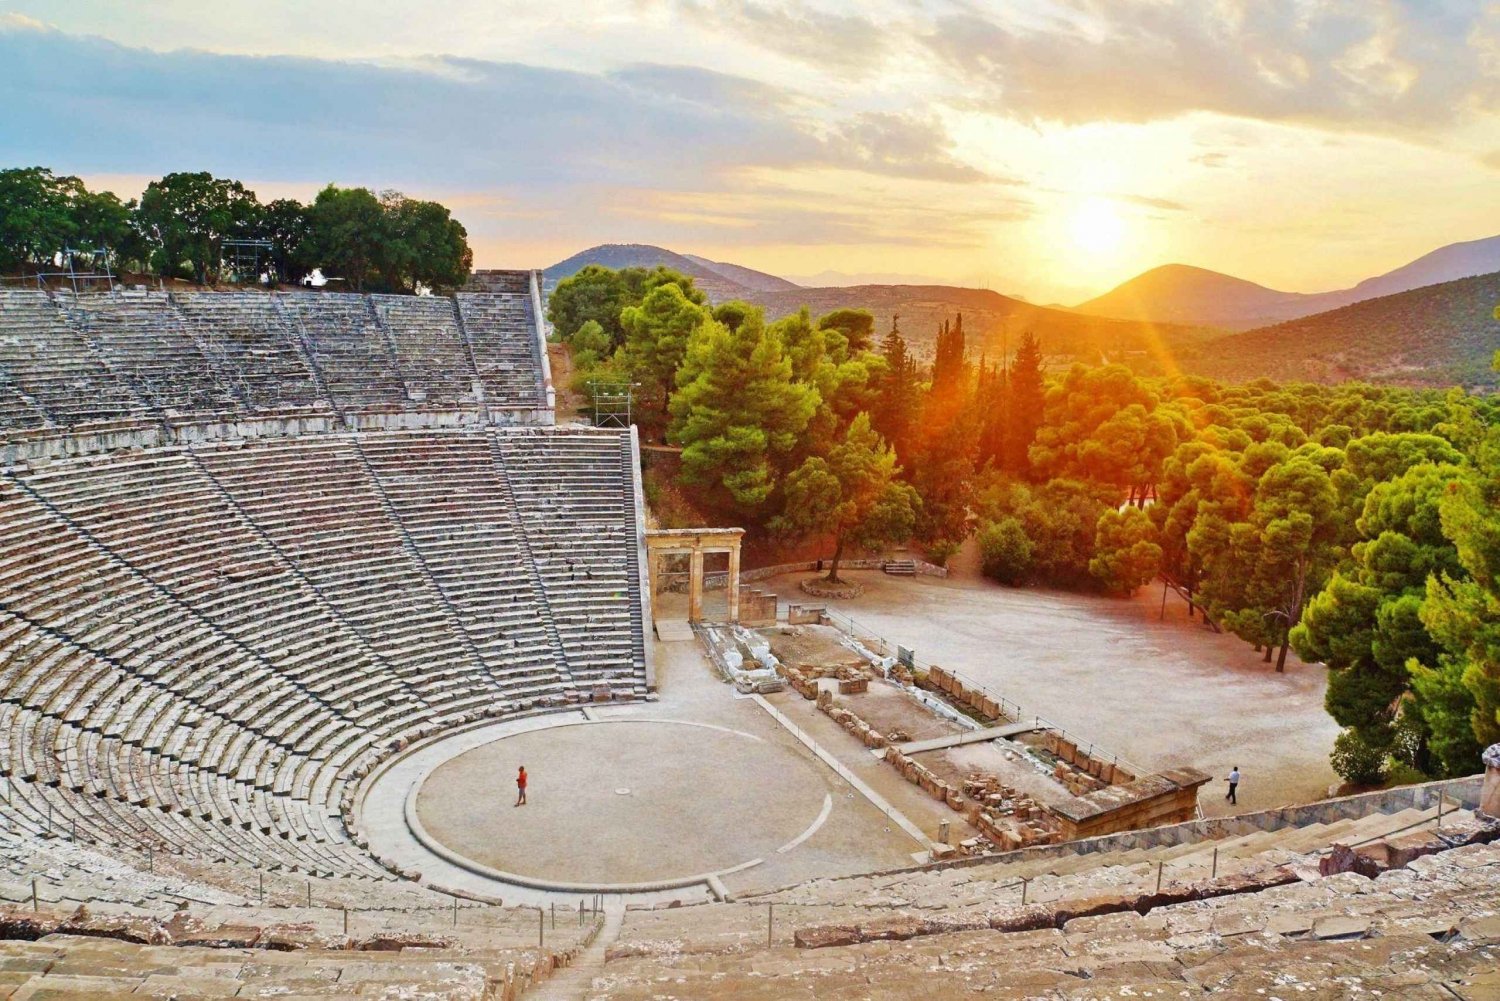 Epidaurus Ancient Theatre & snorkeling in sunken city